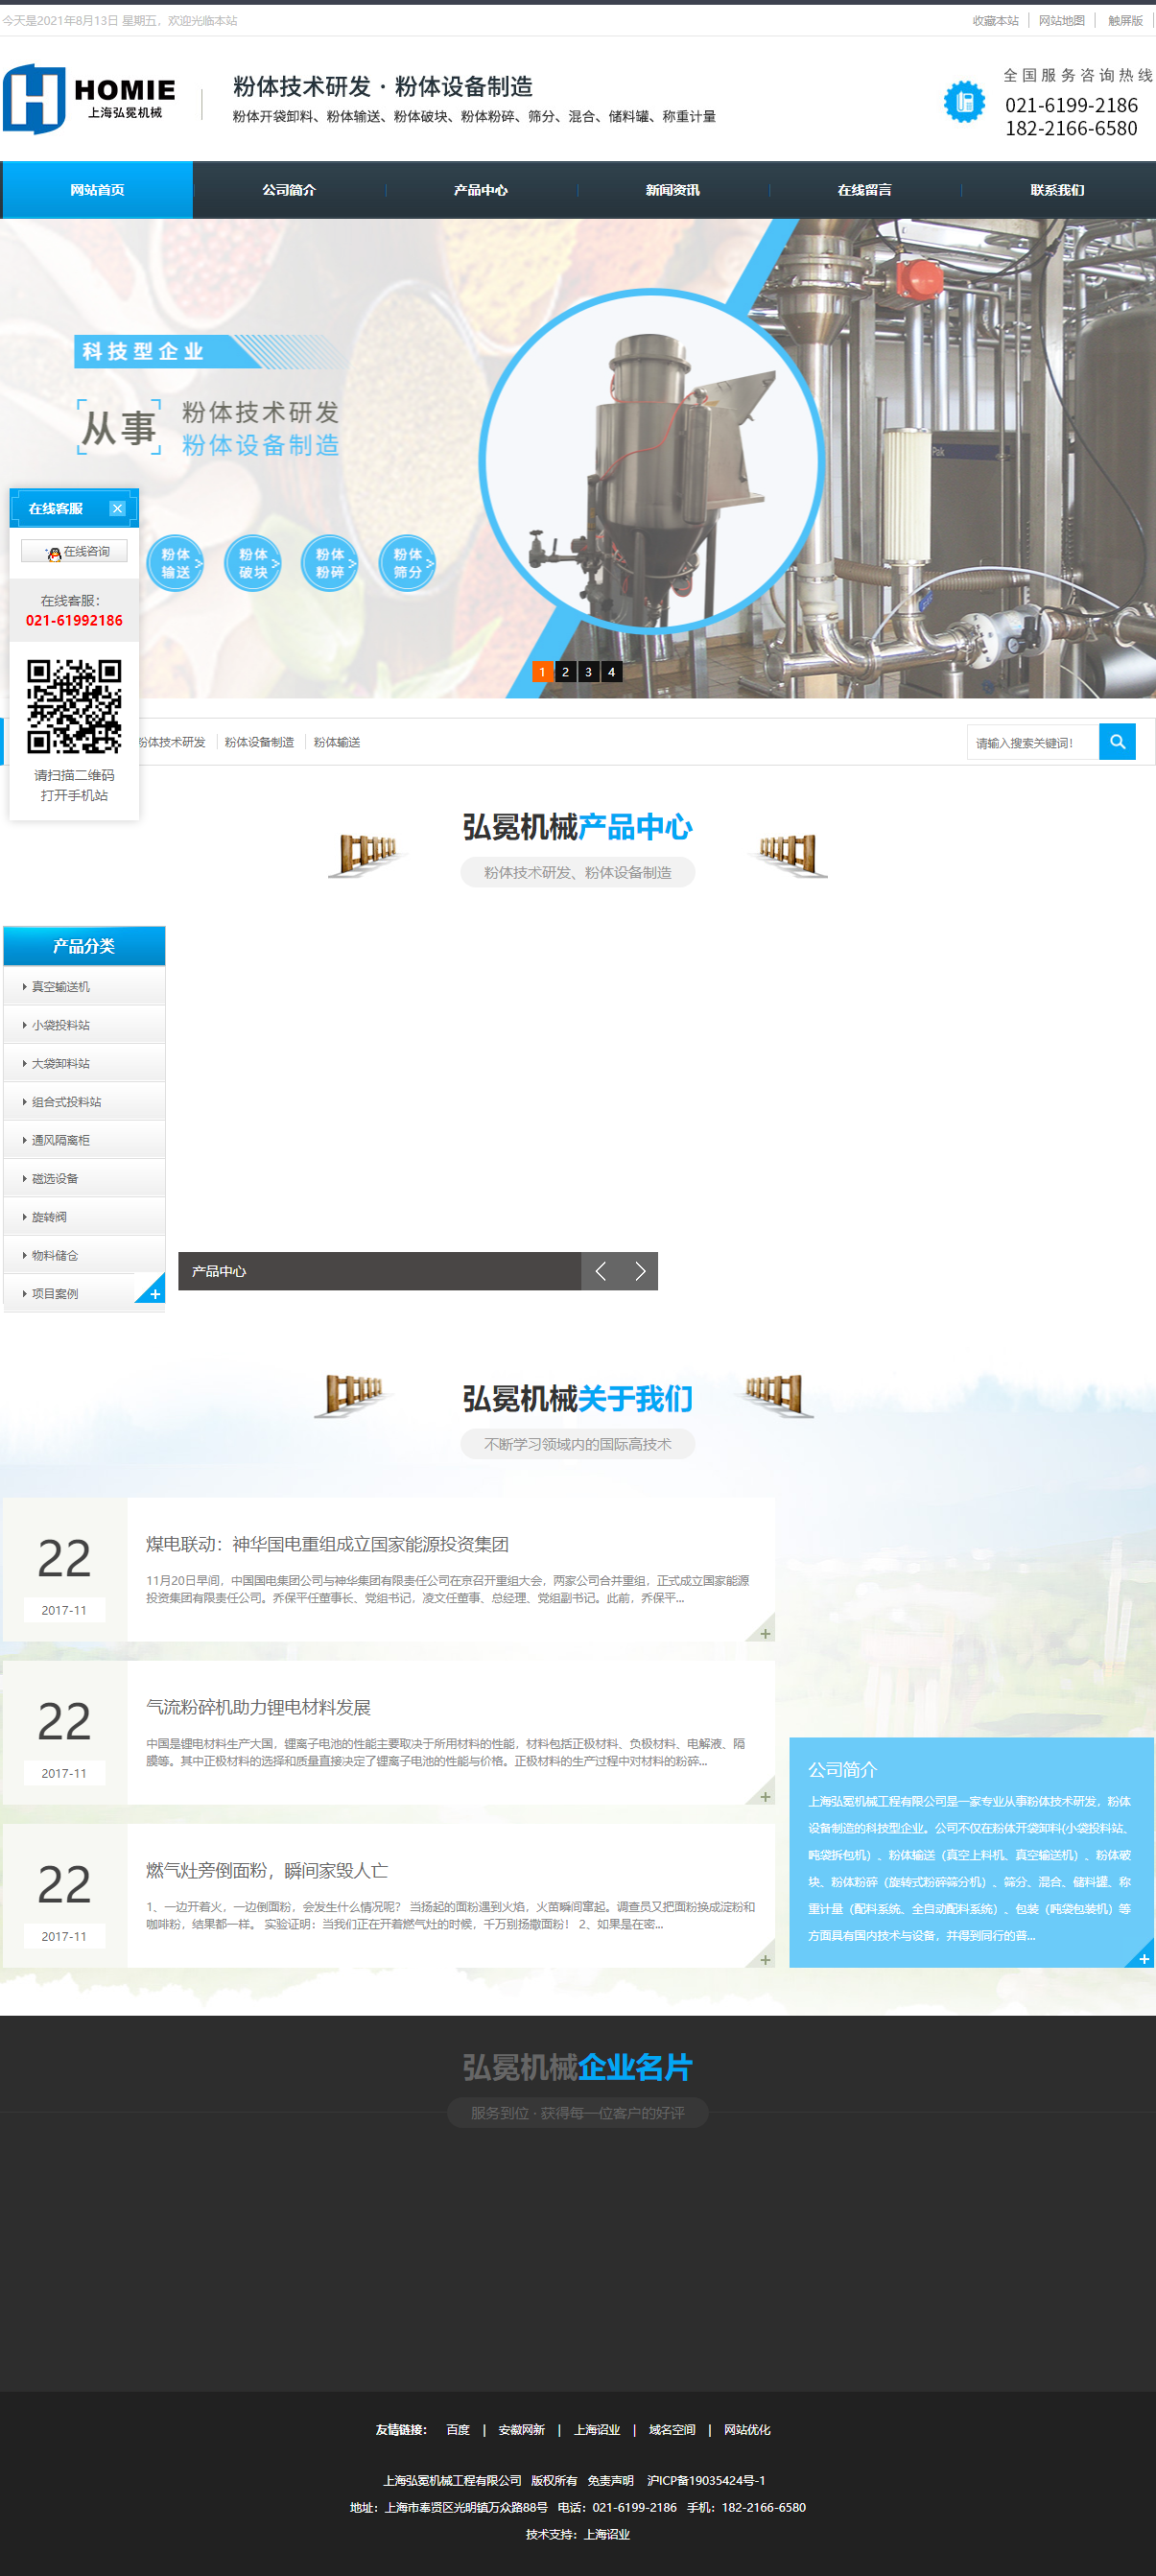 上海弘冕机械工程有限公司网站案例